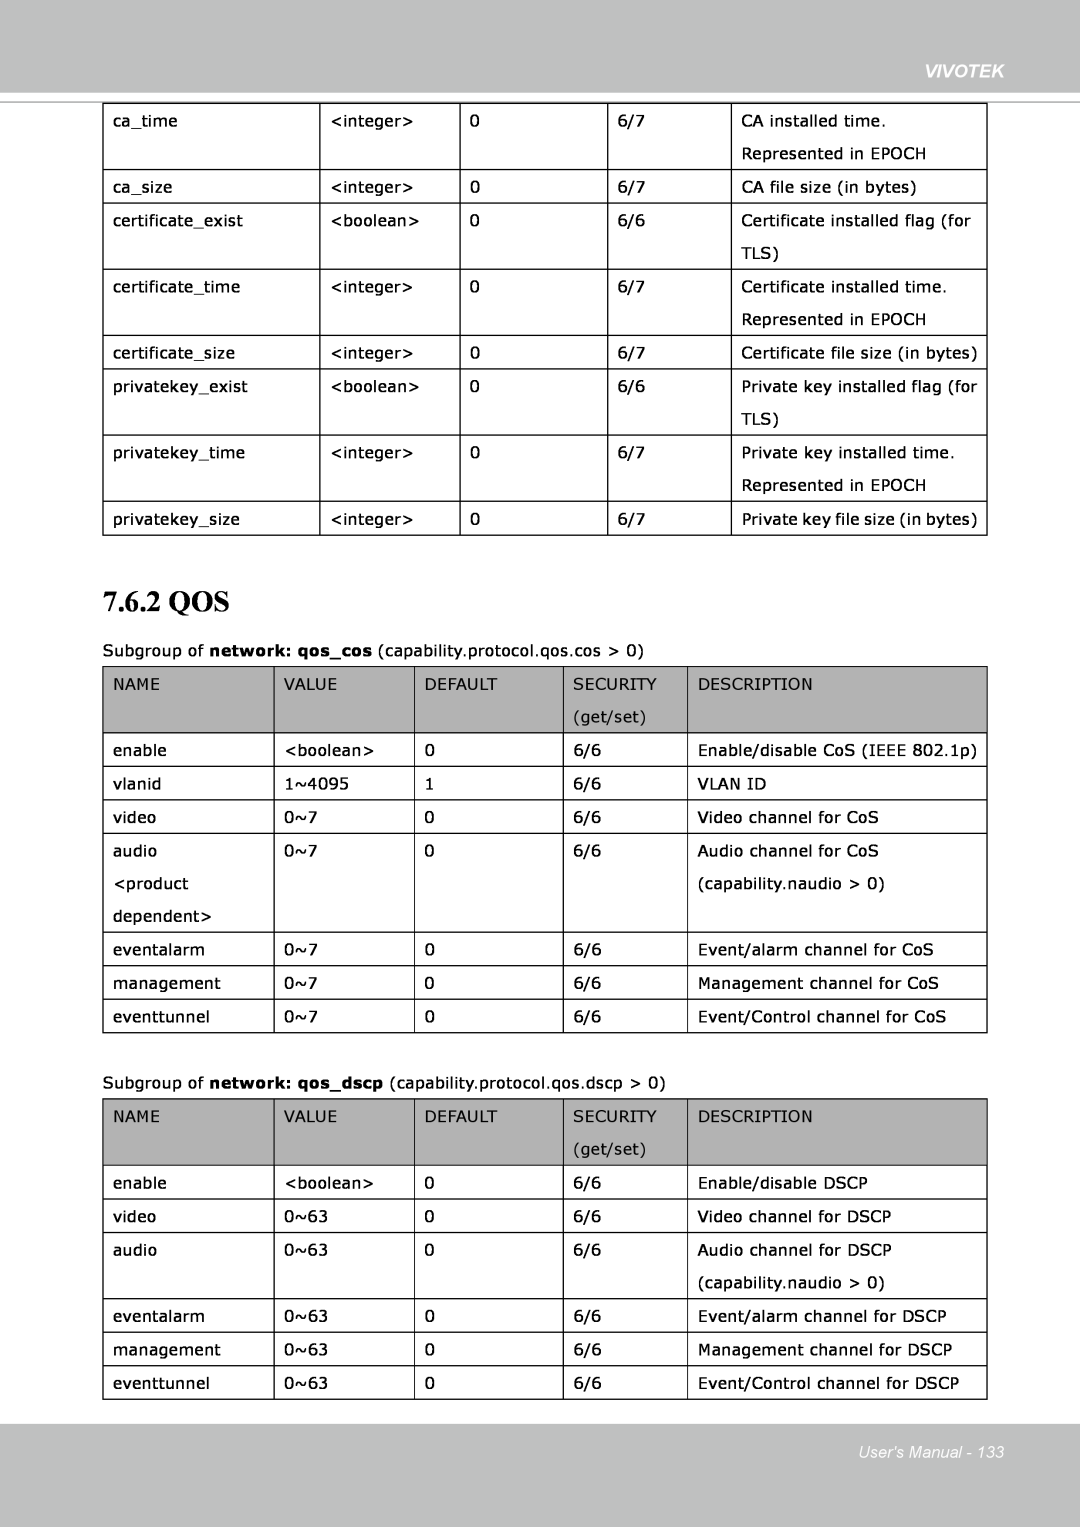 Vivotek FE8171V manual 7.6.2 QOS, Vivotek, Users Manual 